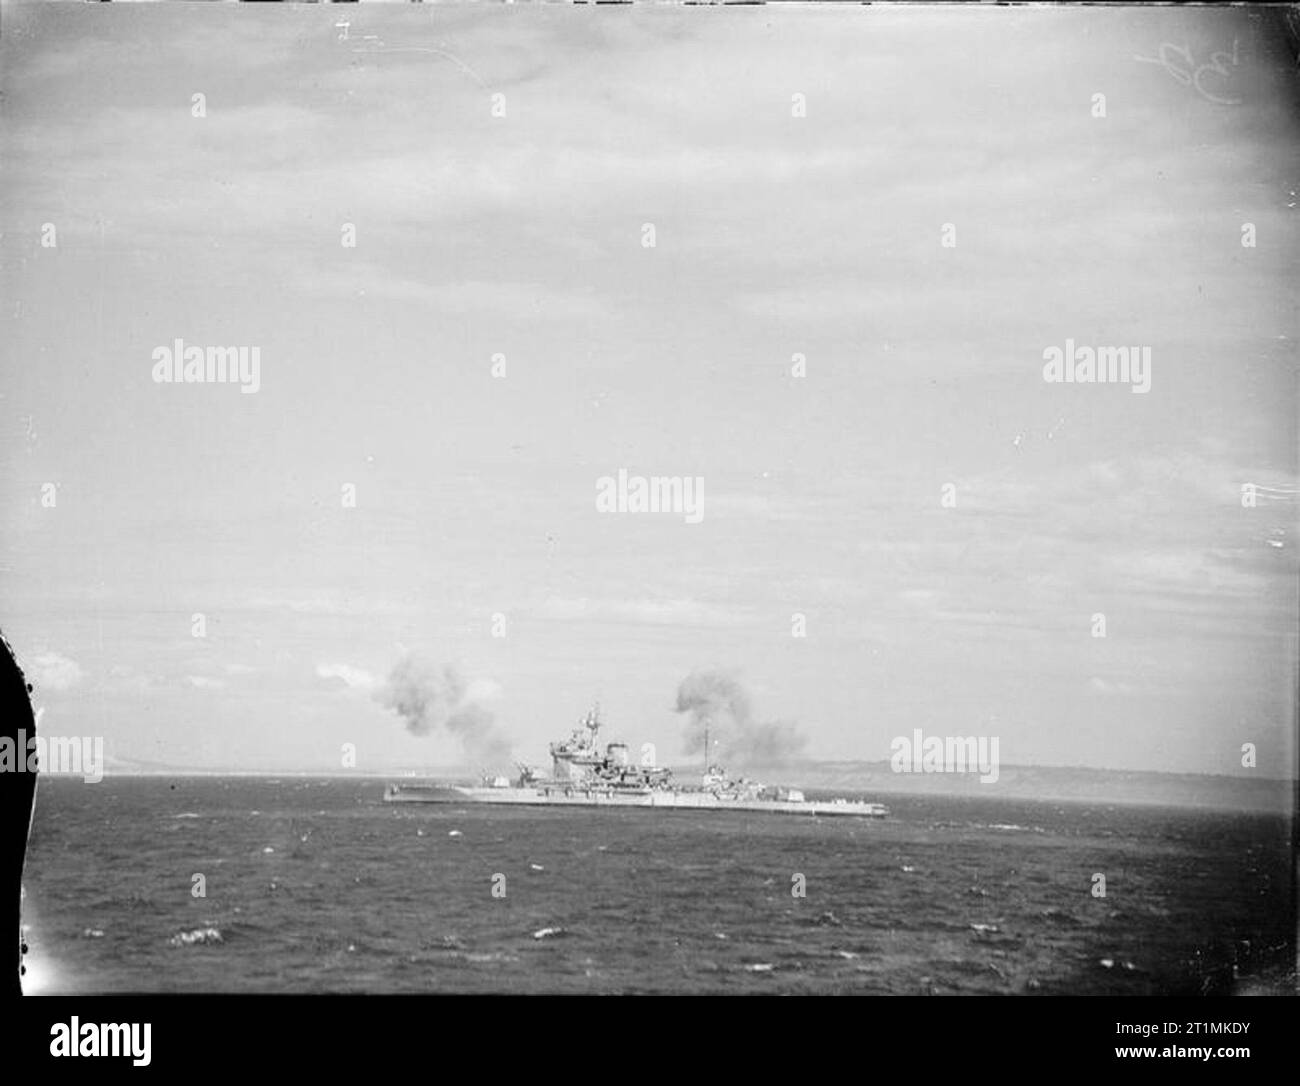 D-Day - britische Truppen während der Invasion in der Normandie am 6. Juni 1944 HMS Warspite, Teil der Beschuss Kraft' aus Le Havre, Beschuss deutsche Gewehr Batterien in Unterstützung der Landungen auf Schwert, 6. Juni 1944. Das Foto wurde von der Fregatte HMS HOLMES, welcher Teil des Escort Gruppe gebildet. Stockfoto